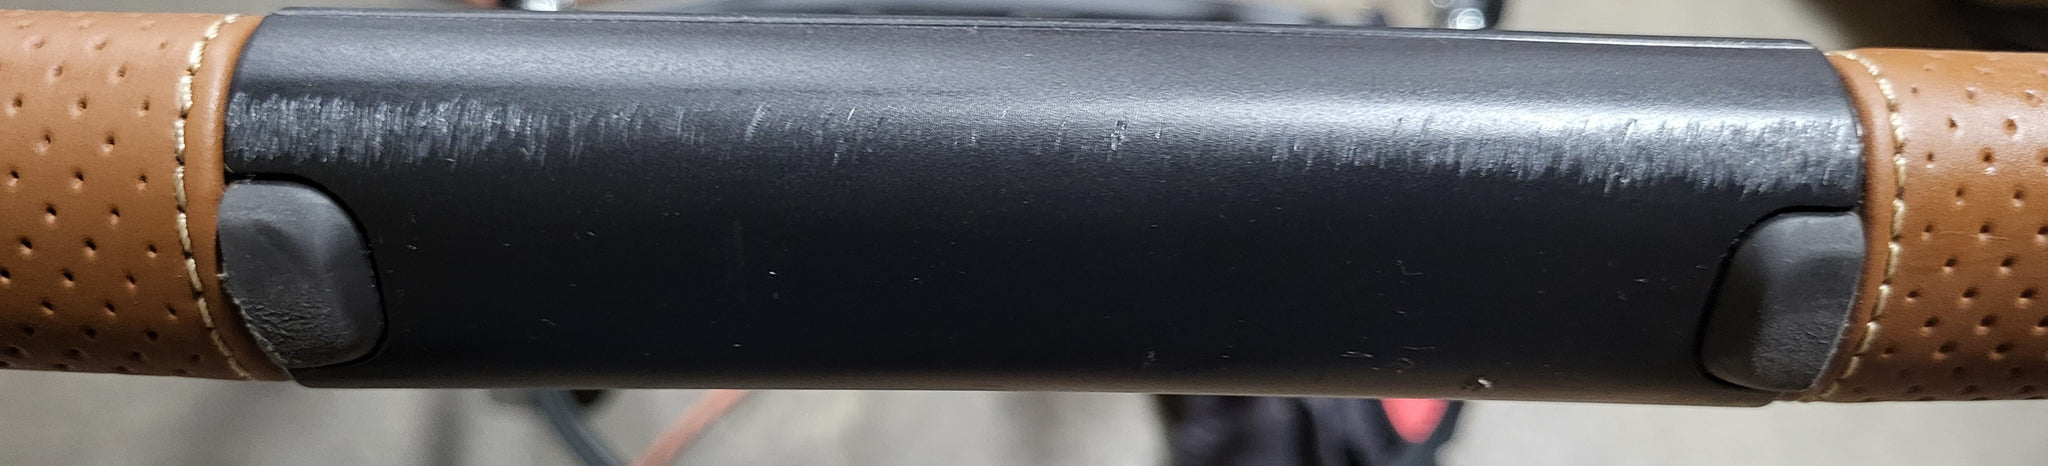 (Store Display) UPPAbaby Vista V2 Stroller- Greyson (Charcoal Melange/Carbon/Saddle Leather)